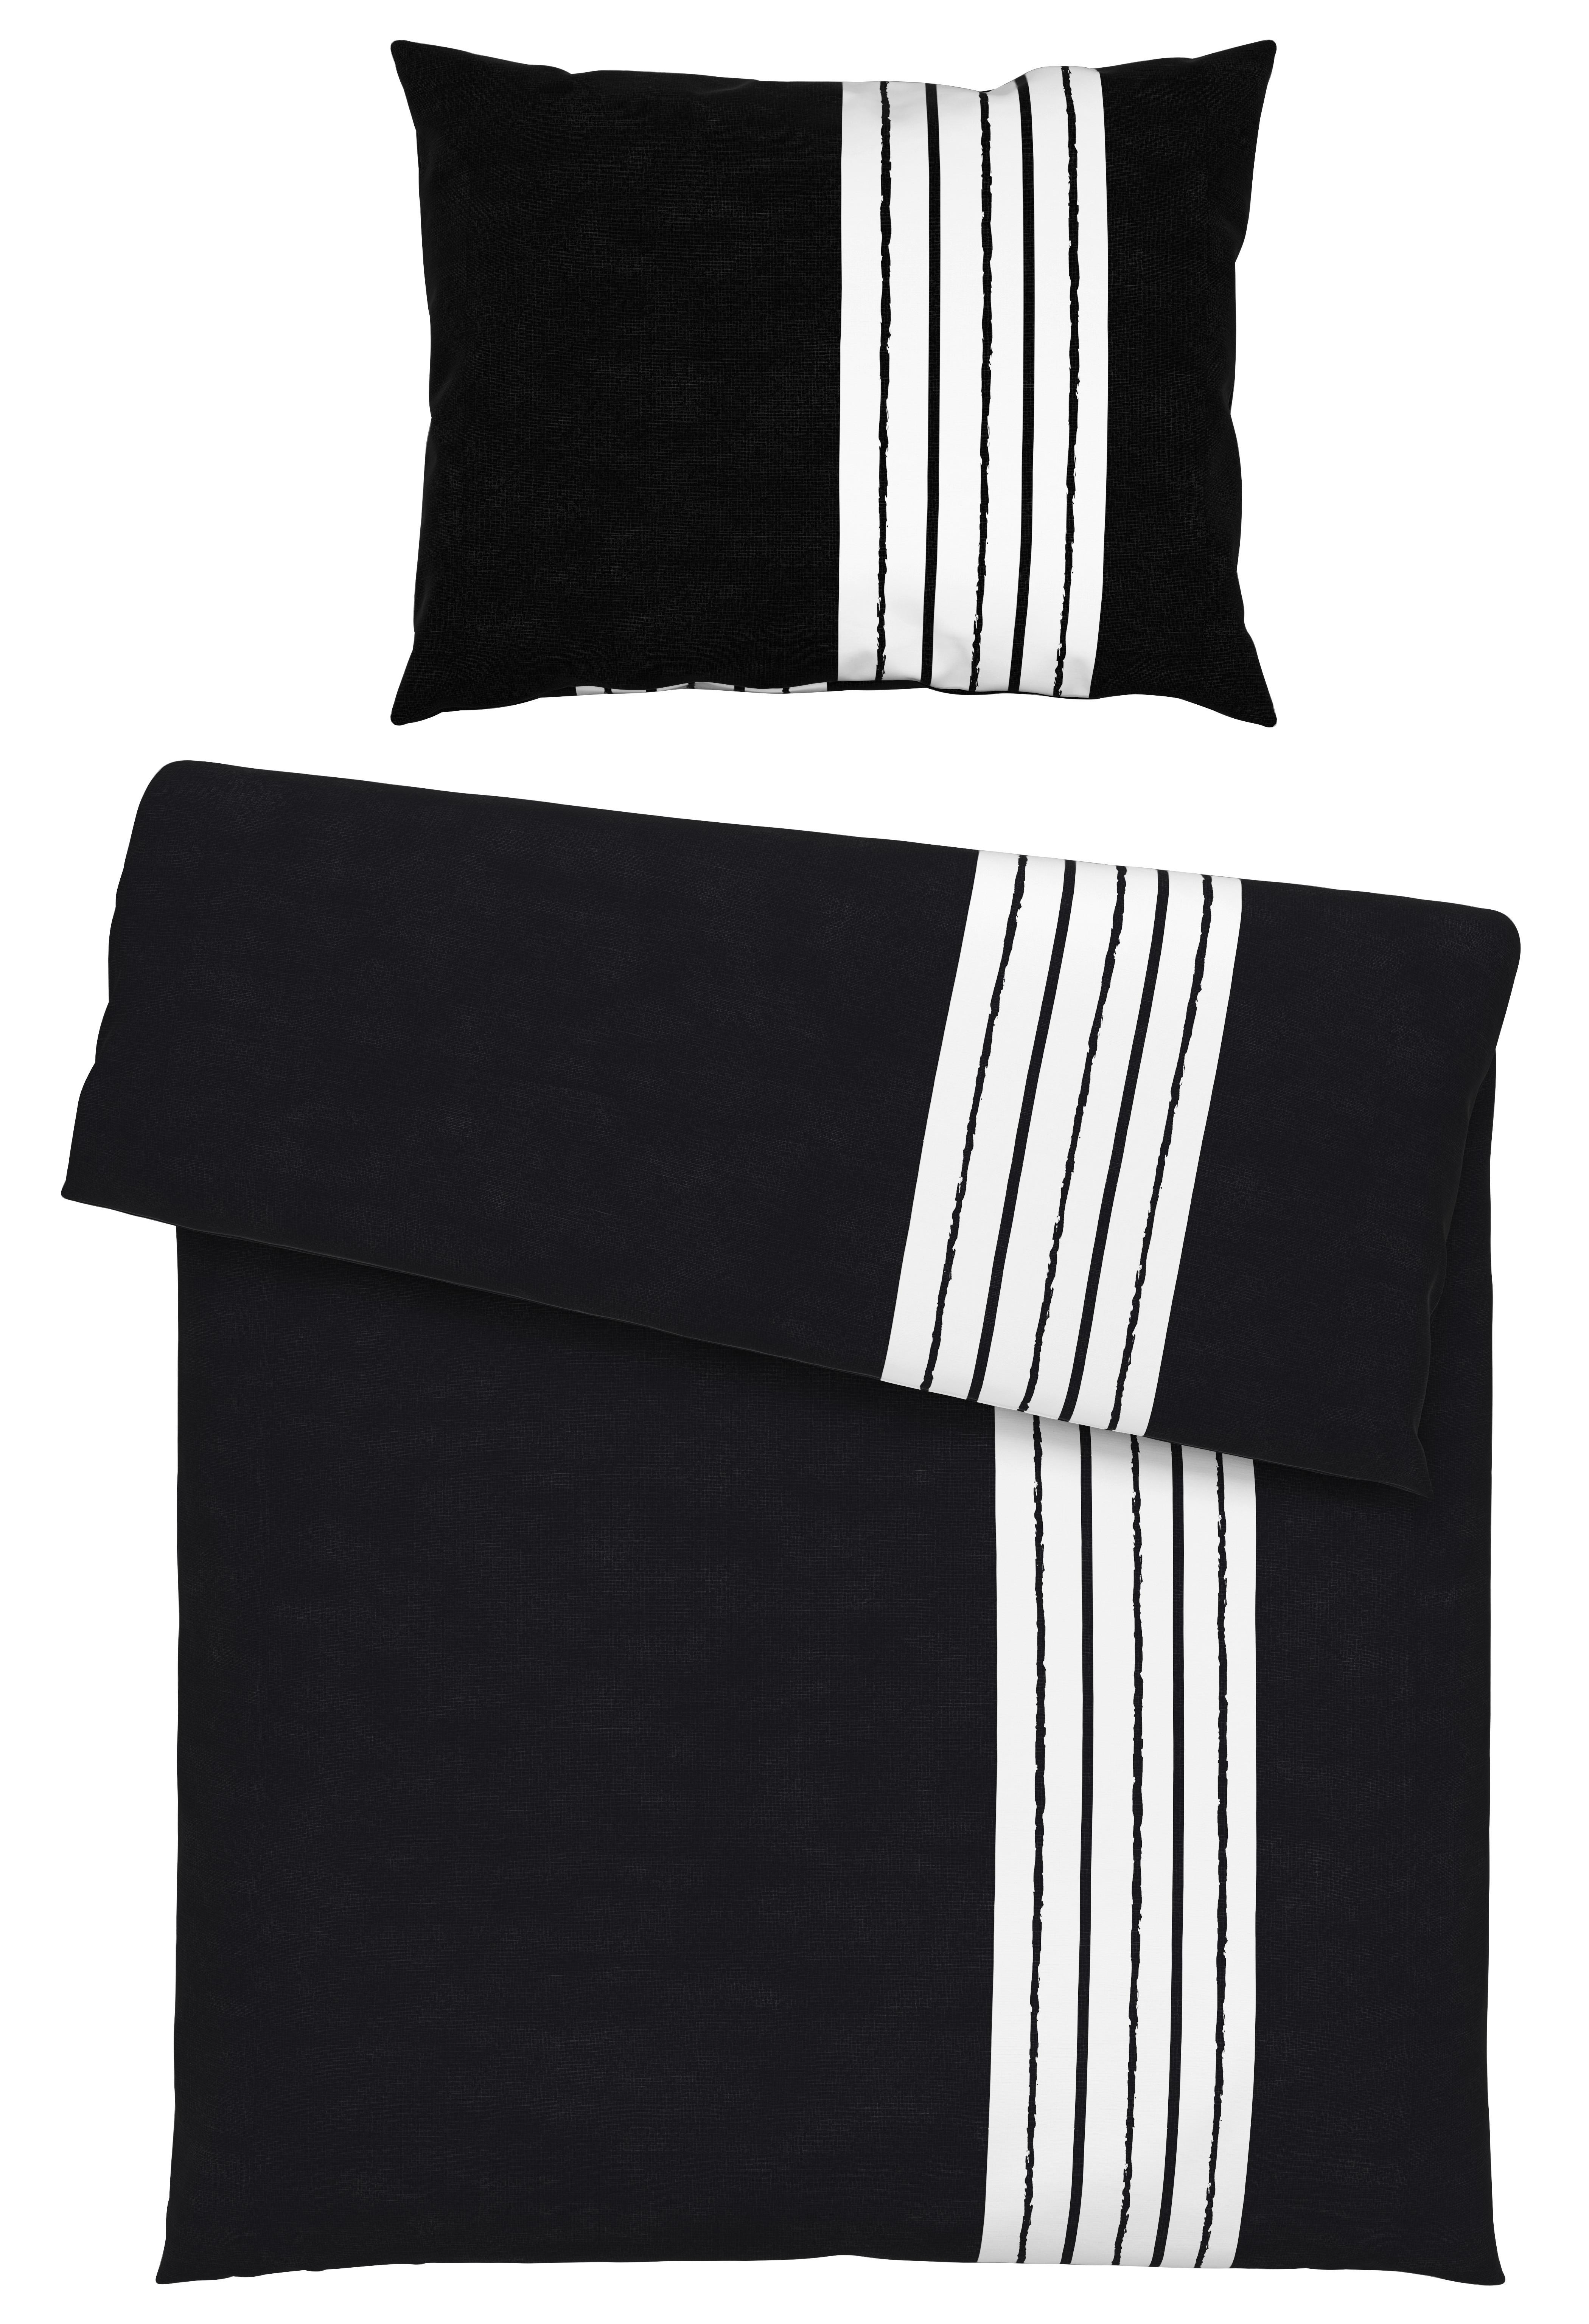 Posteľná Bielizeň Stripes, 140/200cm, Čierna - čierna, Moderný, textil (140/200cm) - Modern Living